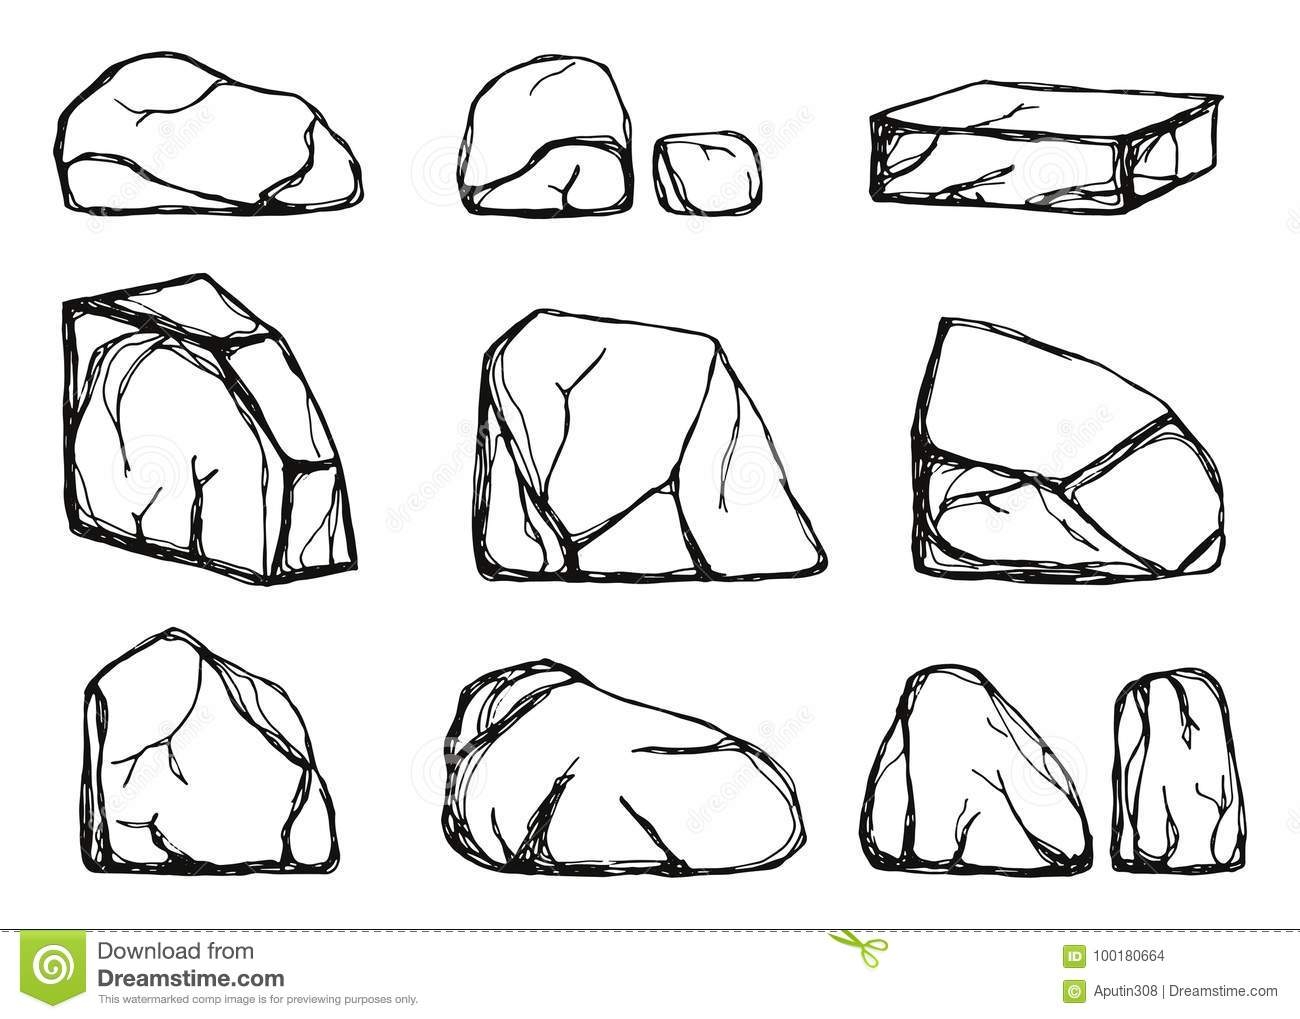 Камни схематическое изображение